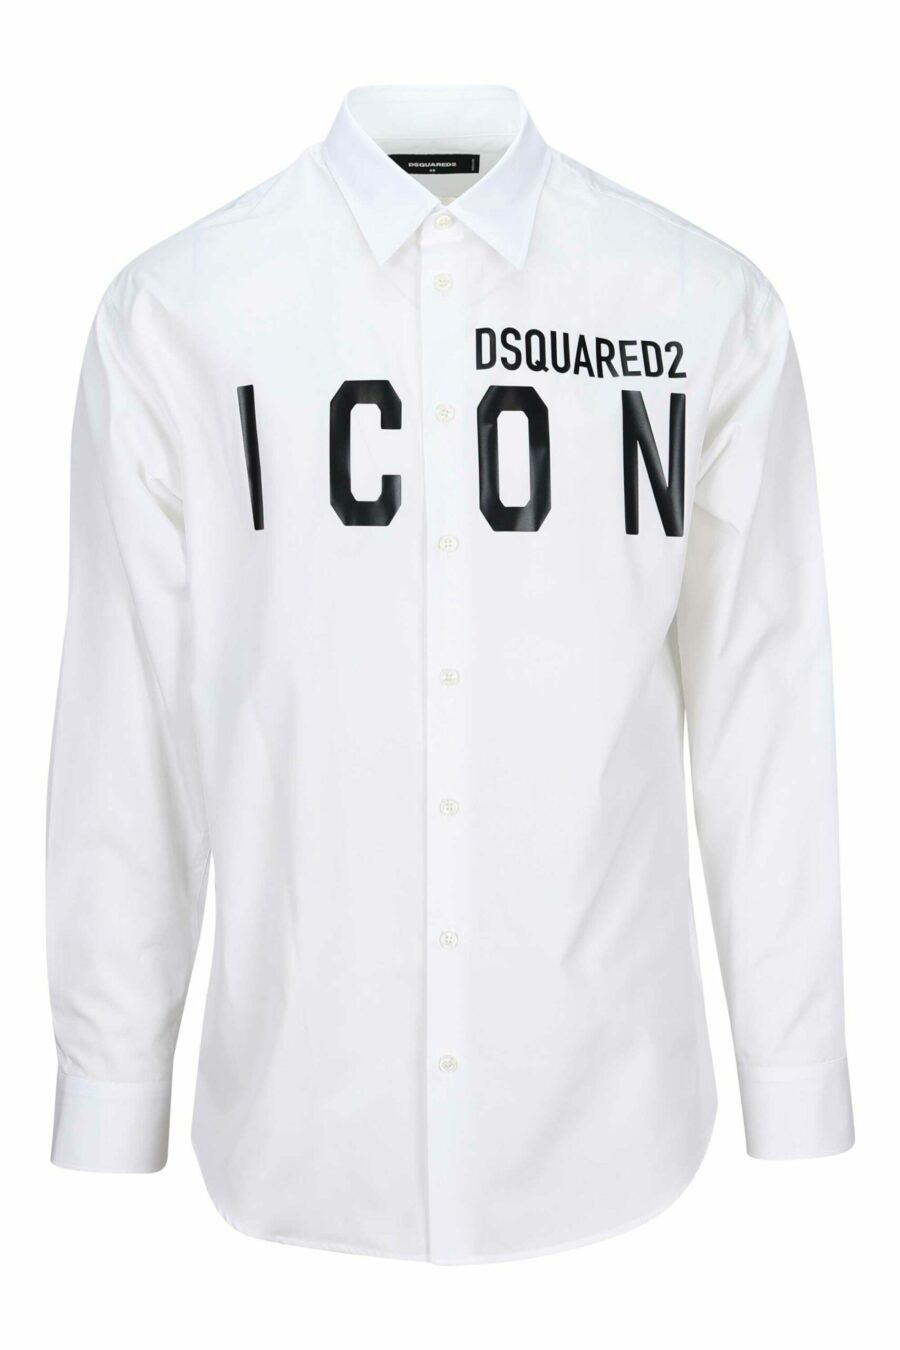 Camisa blanca con maxilogo "icon" - 8052134107577 scaled